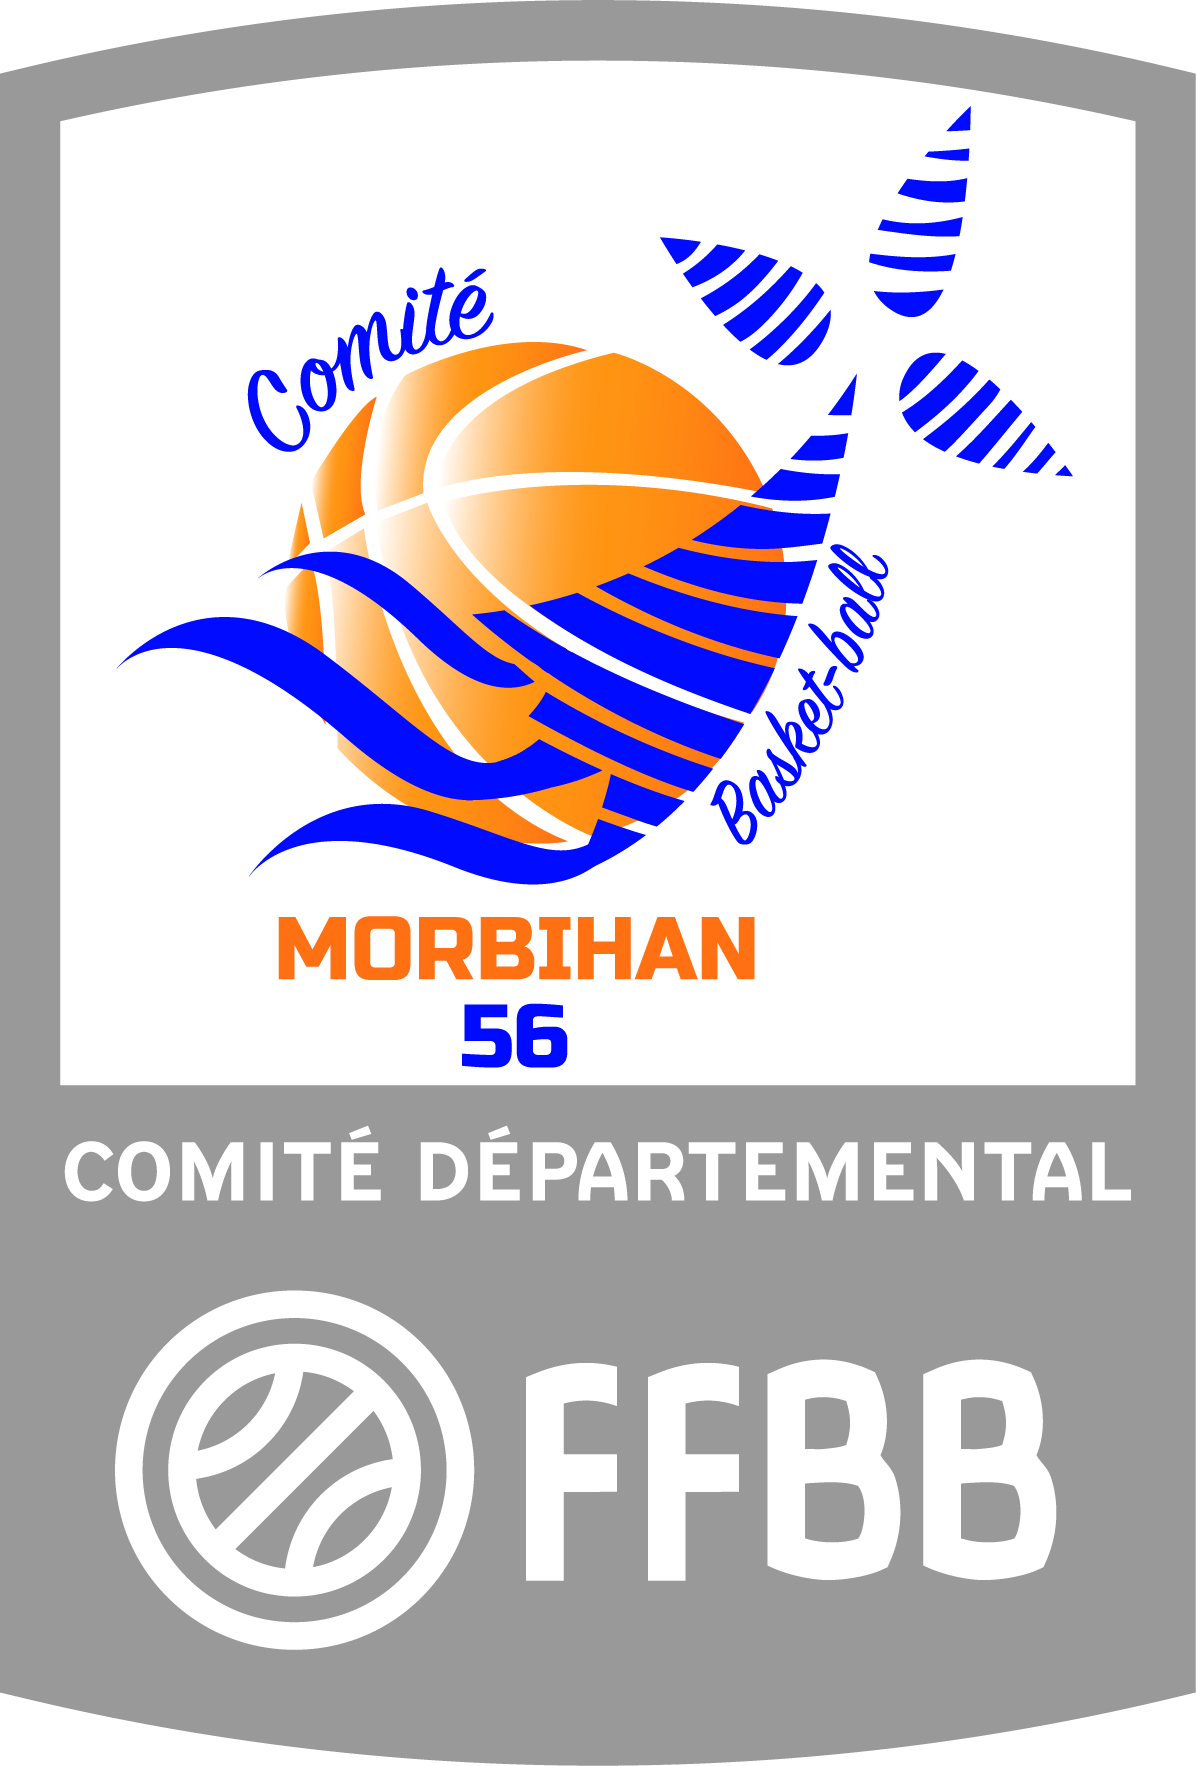 (c) Morbihanbasketball.org